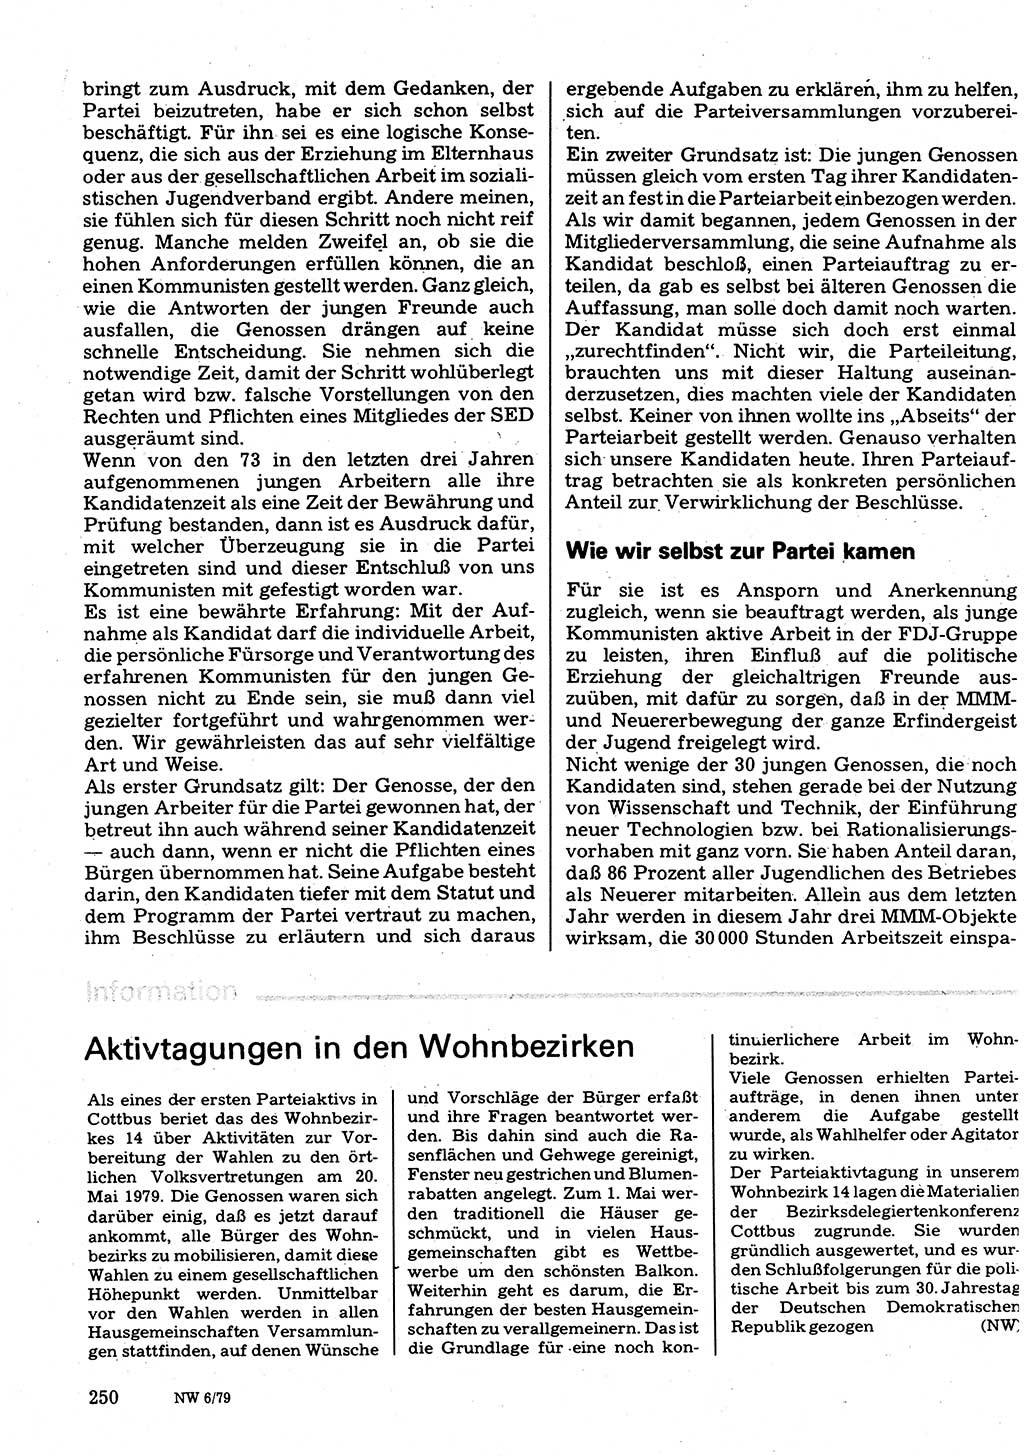 Neuer Weg (NW), Organ des Zentralkomitees (ZK) der SED (Sozialistische Einheitspartei Deutschlands) für Fragen des Parteilebens, 34. Jahrgang [Deutsche Demokratische Republik (DDR)] 1979, Seite 250 (NW ZK SED DDR 1979, S. 250)